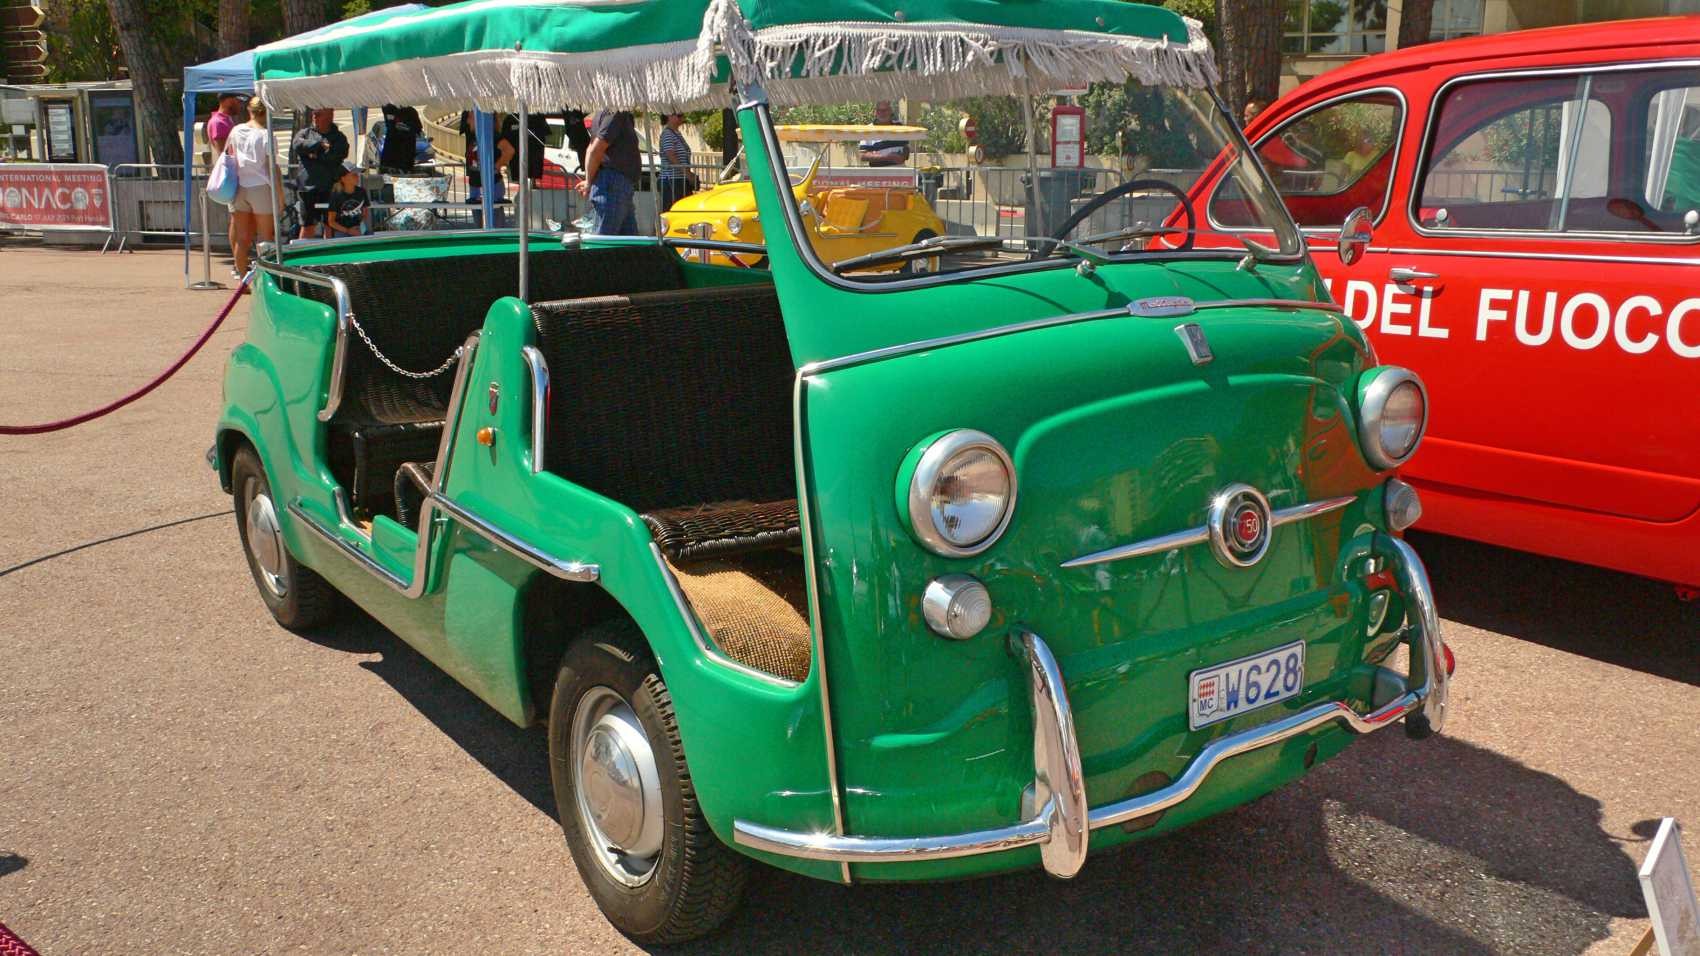 ...la verte est un taxi de plage avec ses fauteuils en osier